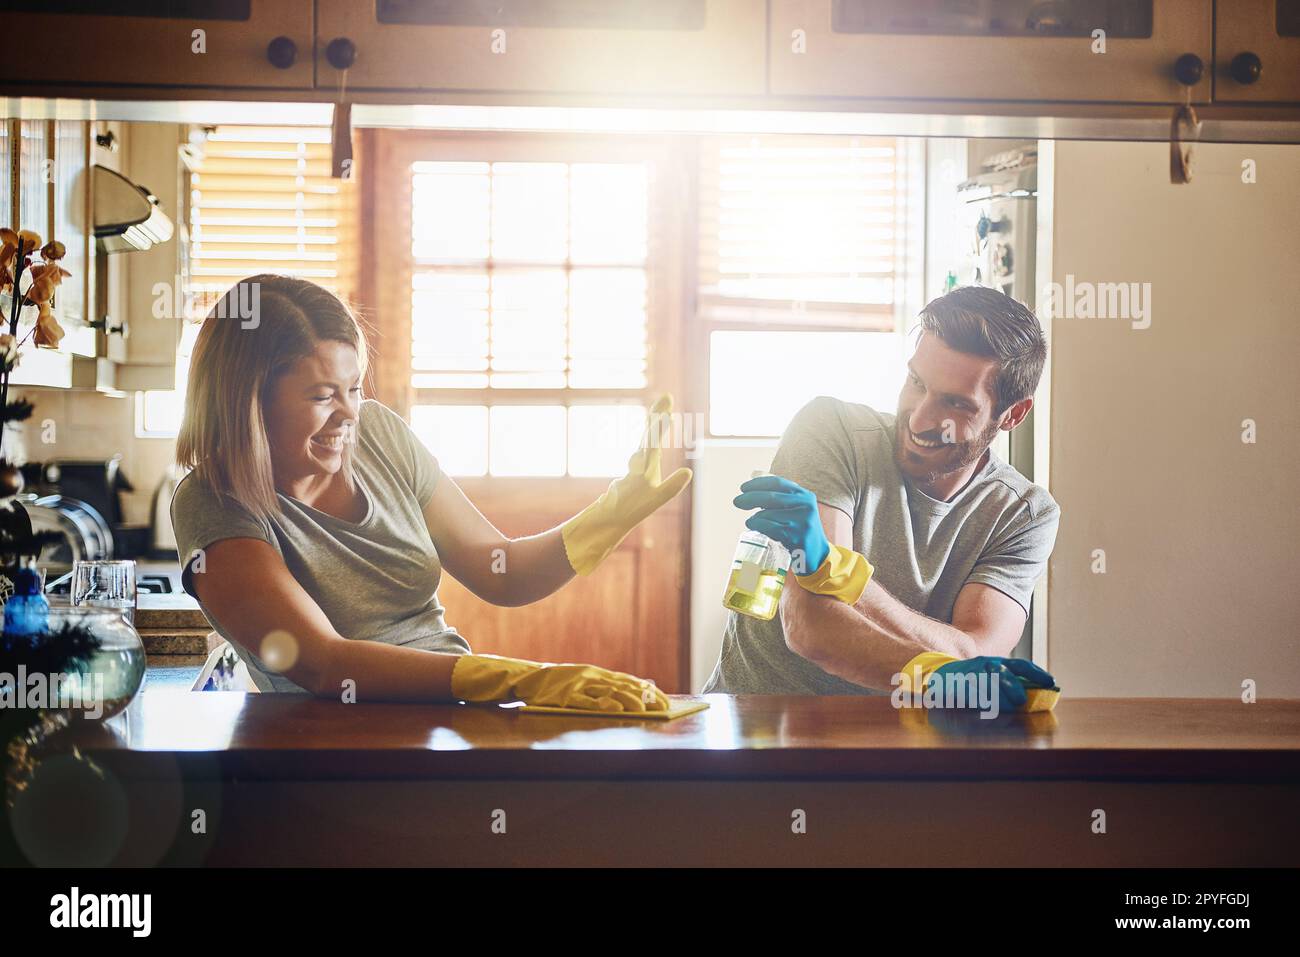 Herummachen ist Teil des Spaßes. Ein junges Paar, das sich amüsiert, während es zu Hause Hausarbeiten macht. Stockfoto